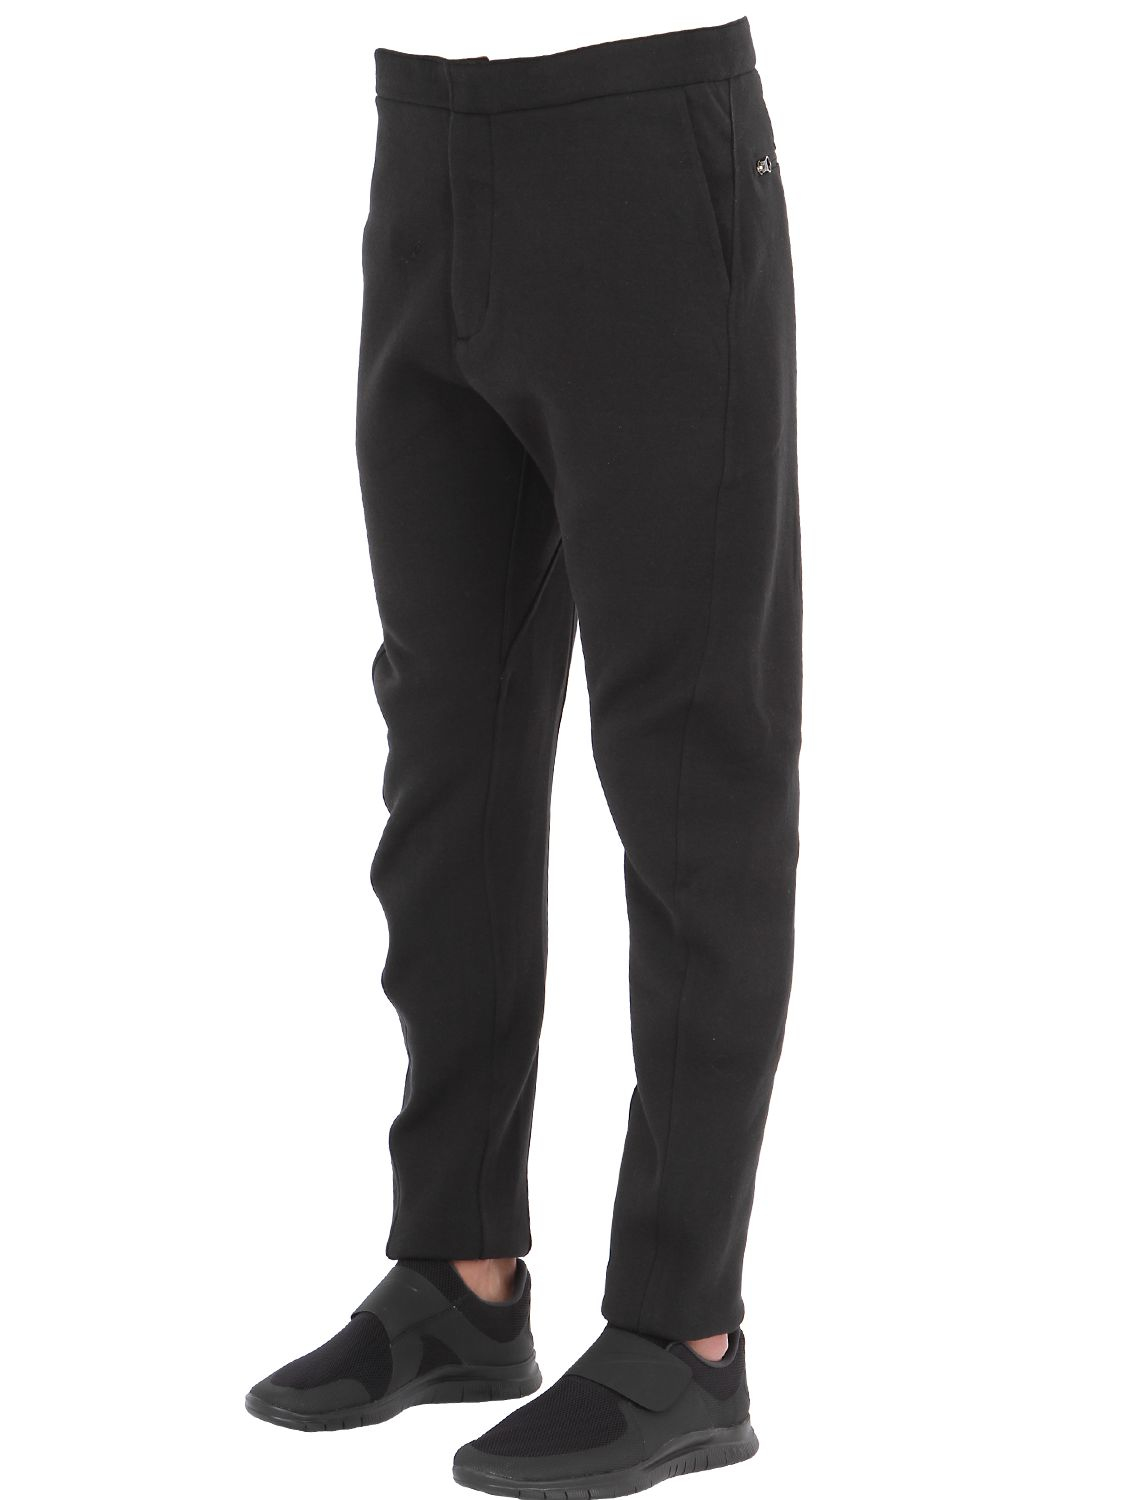 Nike Acg Tech Fleece Pants in Black for Men - Lyst